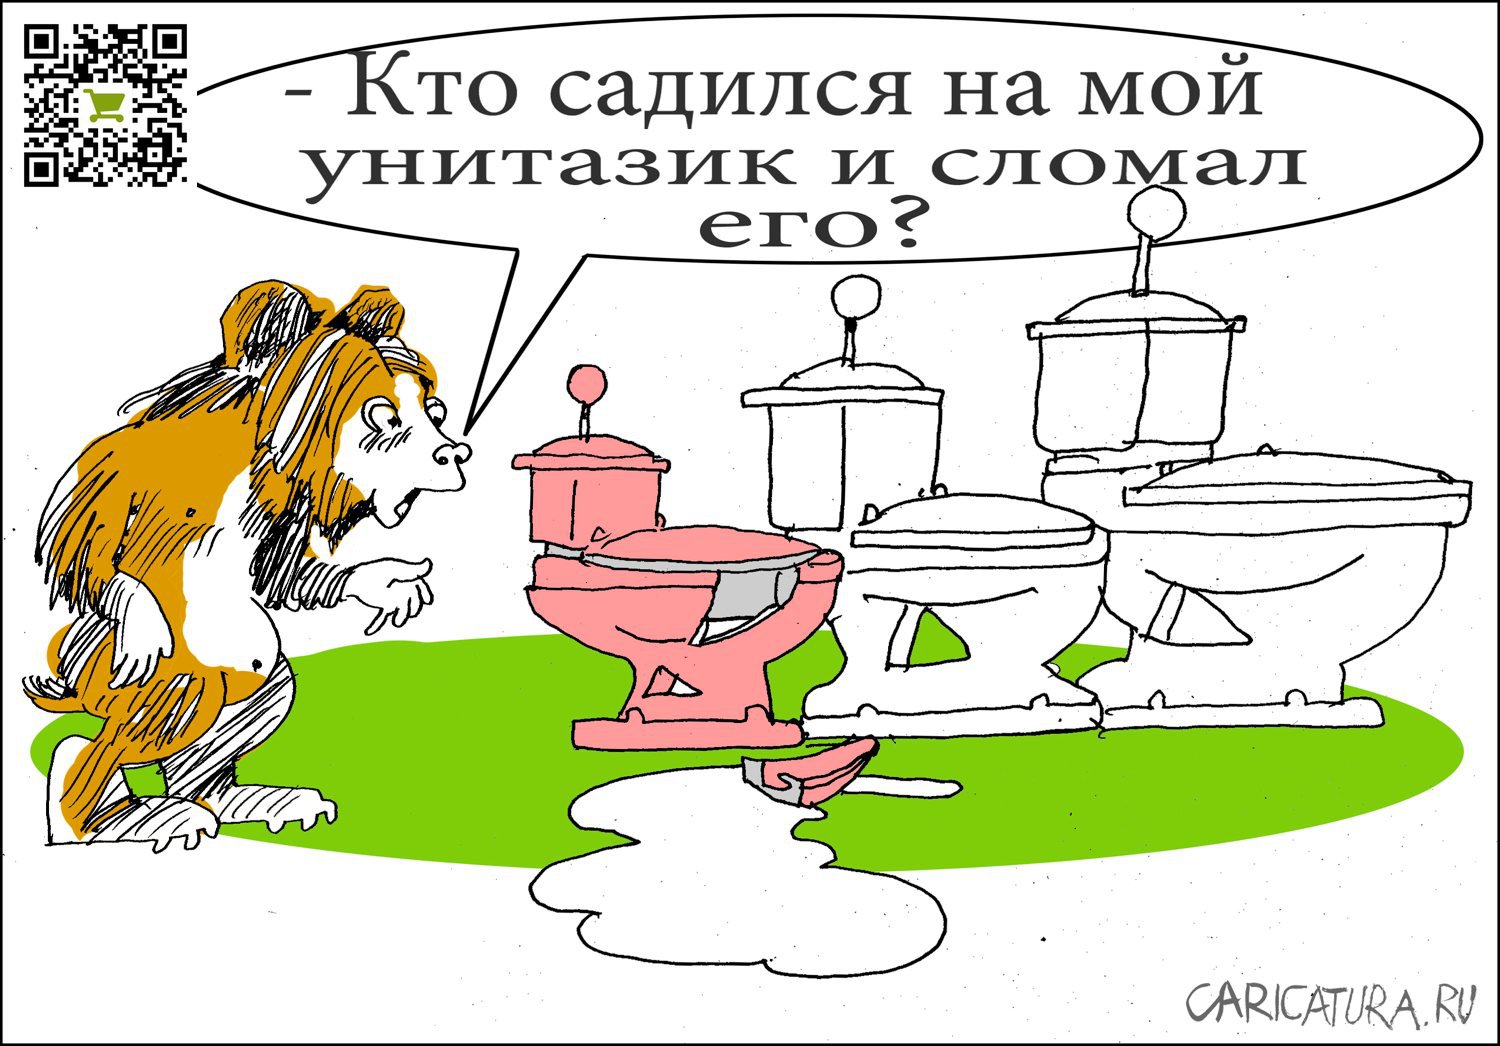 Карикатура "Три медведя", Александр Уваров